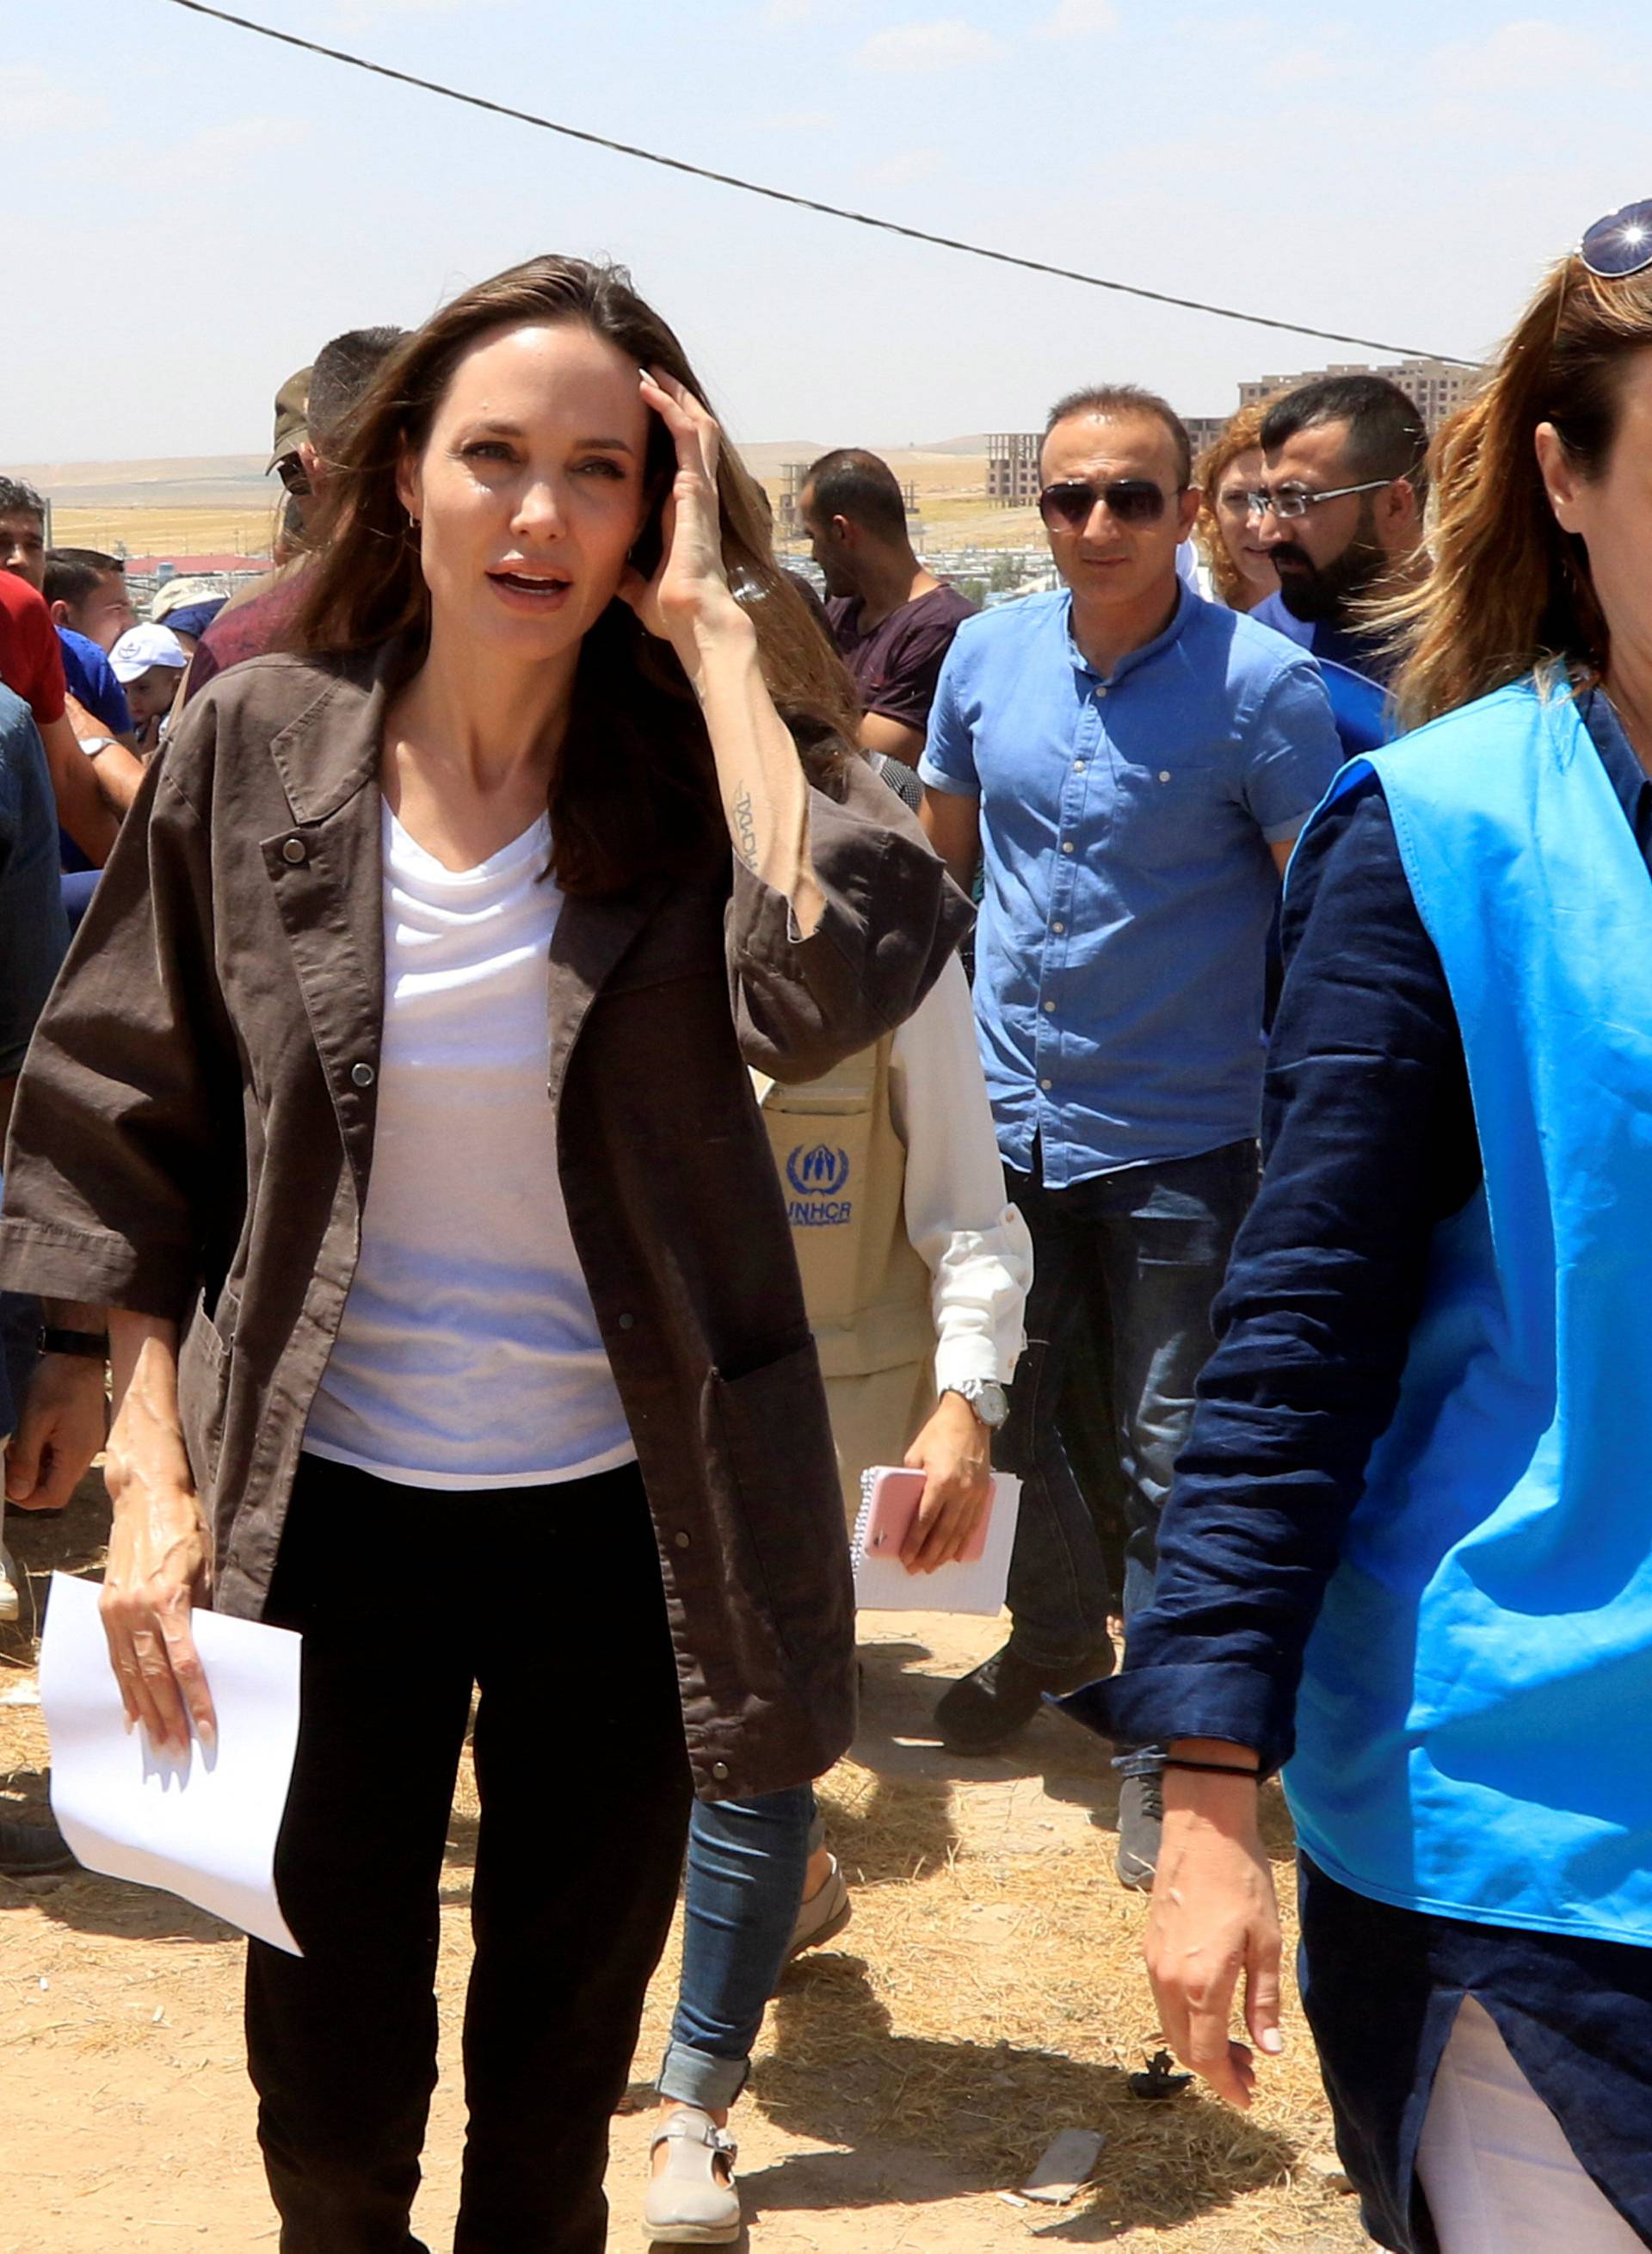 U.N. Refugee Agencyâs special envoy Angelina Jolie attends a news conference during her visits to a camp for Syrian refugees in Dohuk